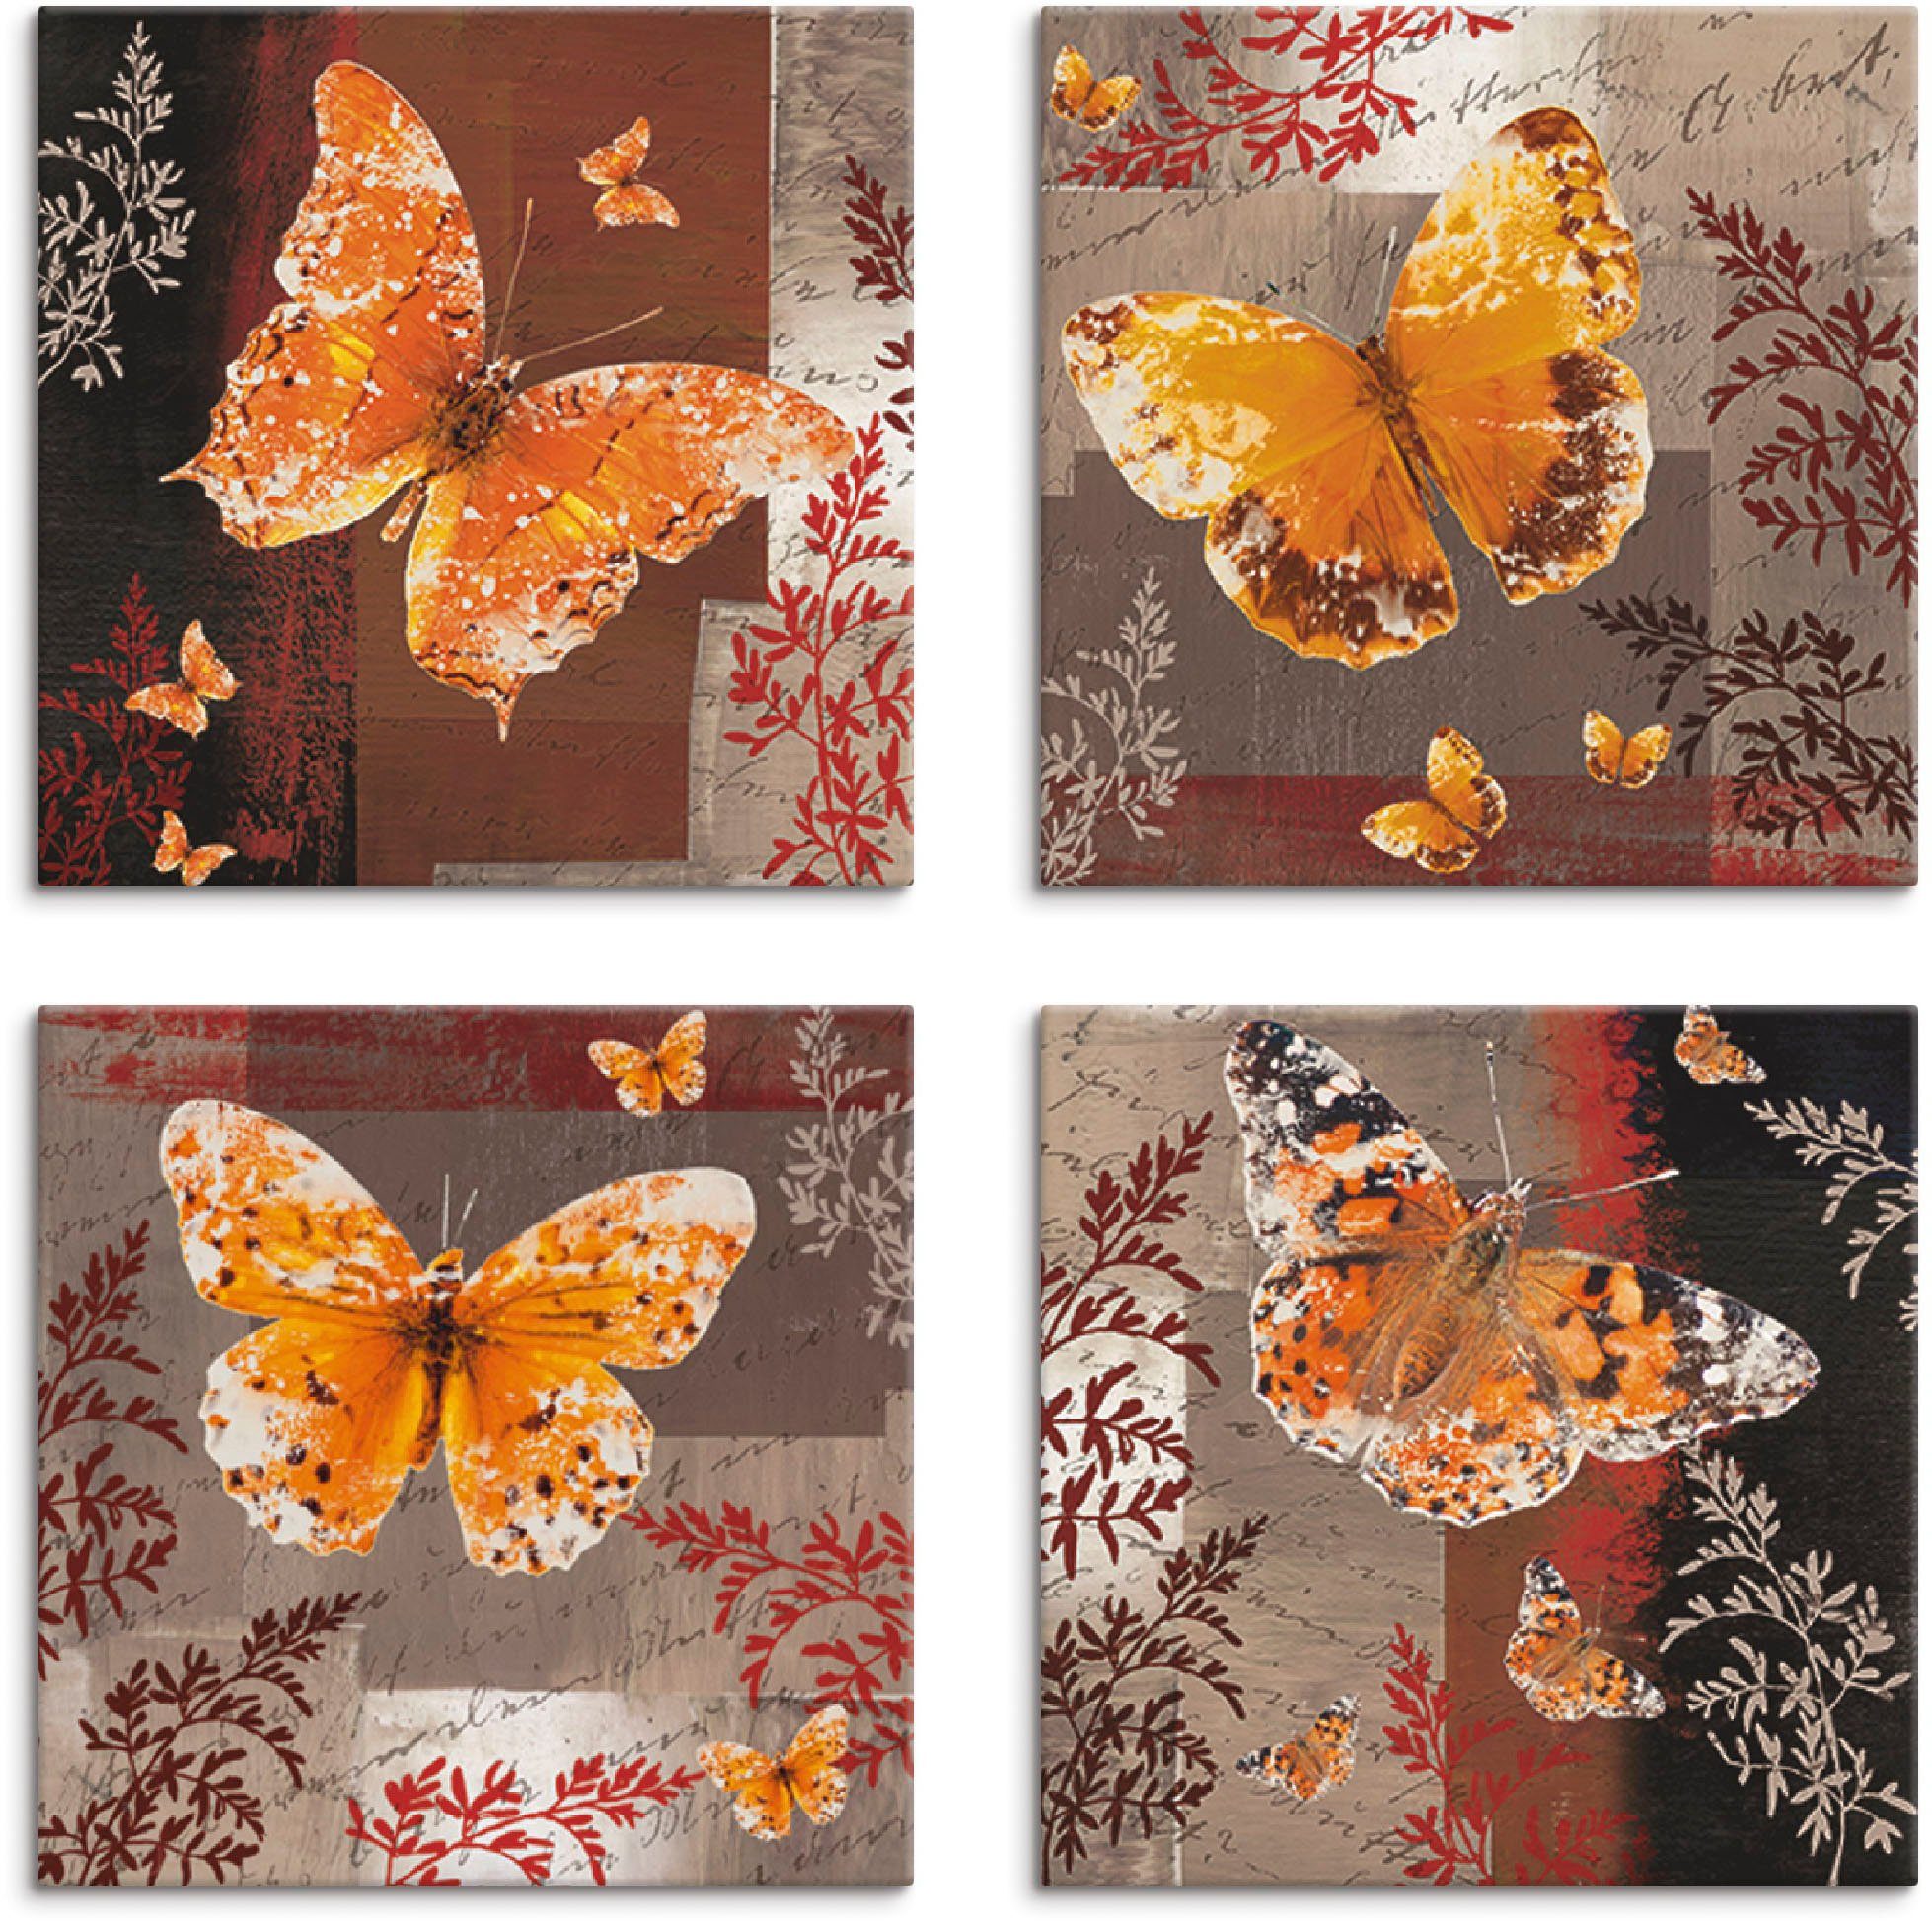 Artland Artprint op linnen Vlinder 1-4 (4 stuks)